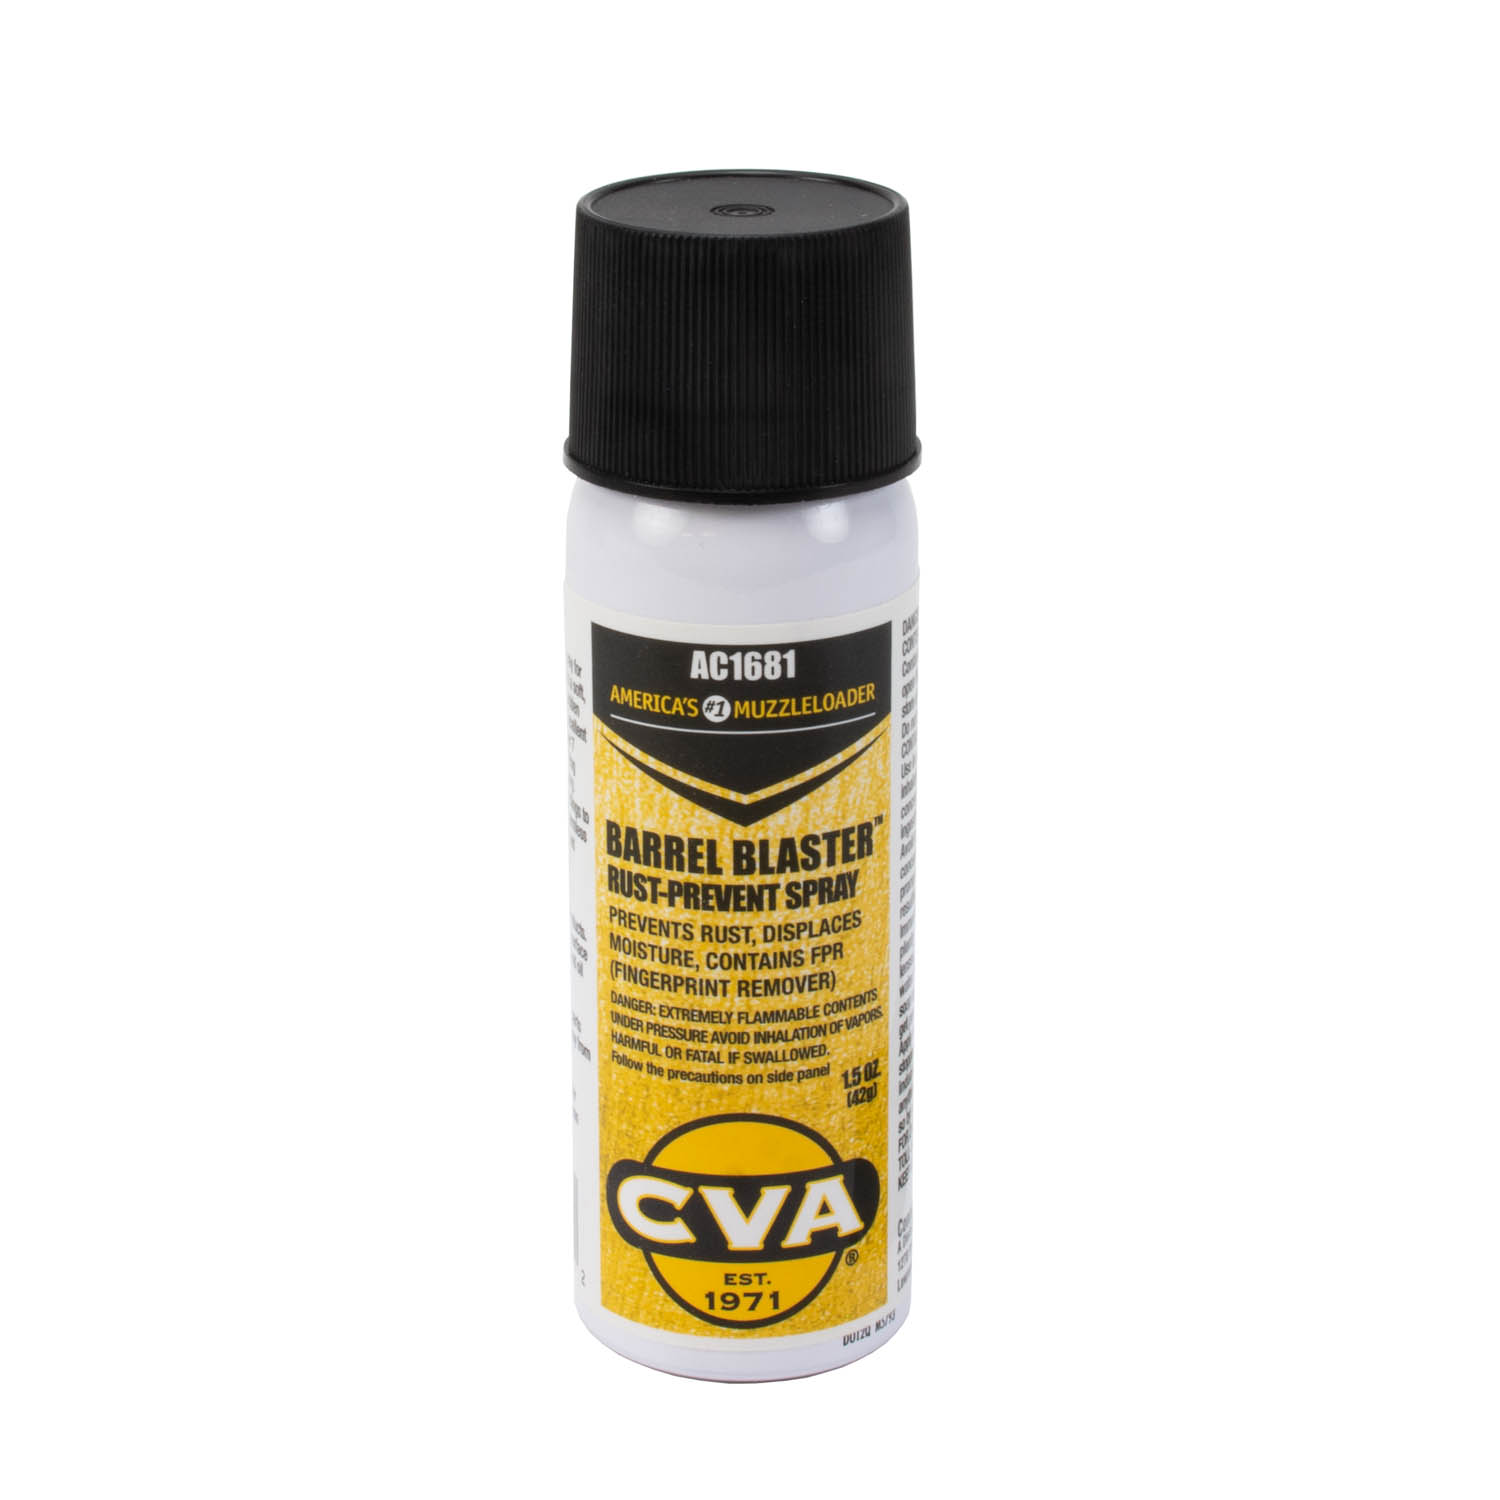 CVA Barrel Blaster Rust Prevent Spray: MGW